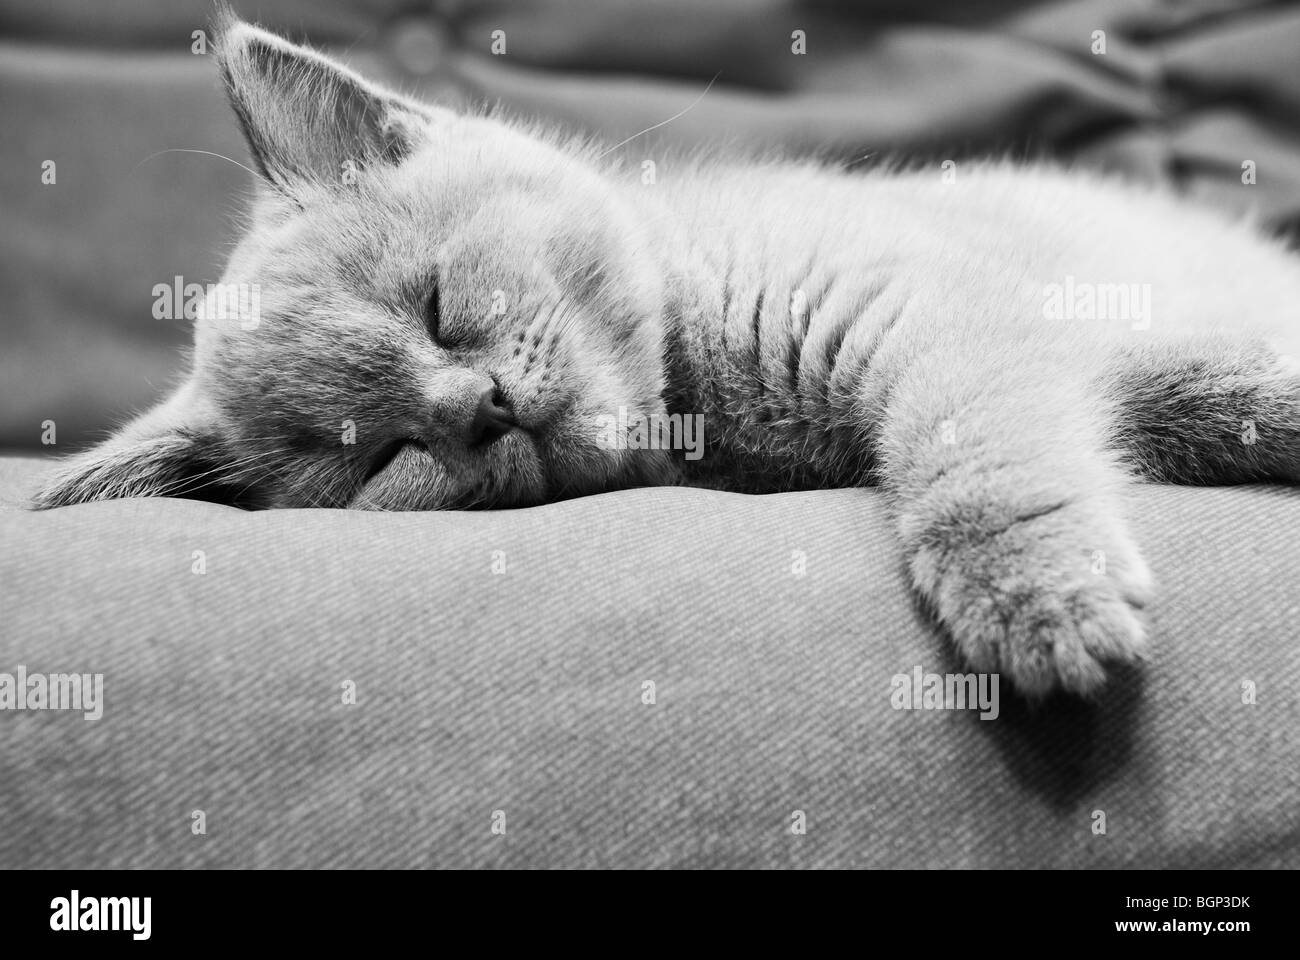 Sleeping british kitten in black and white Stock Photo